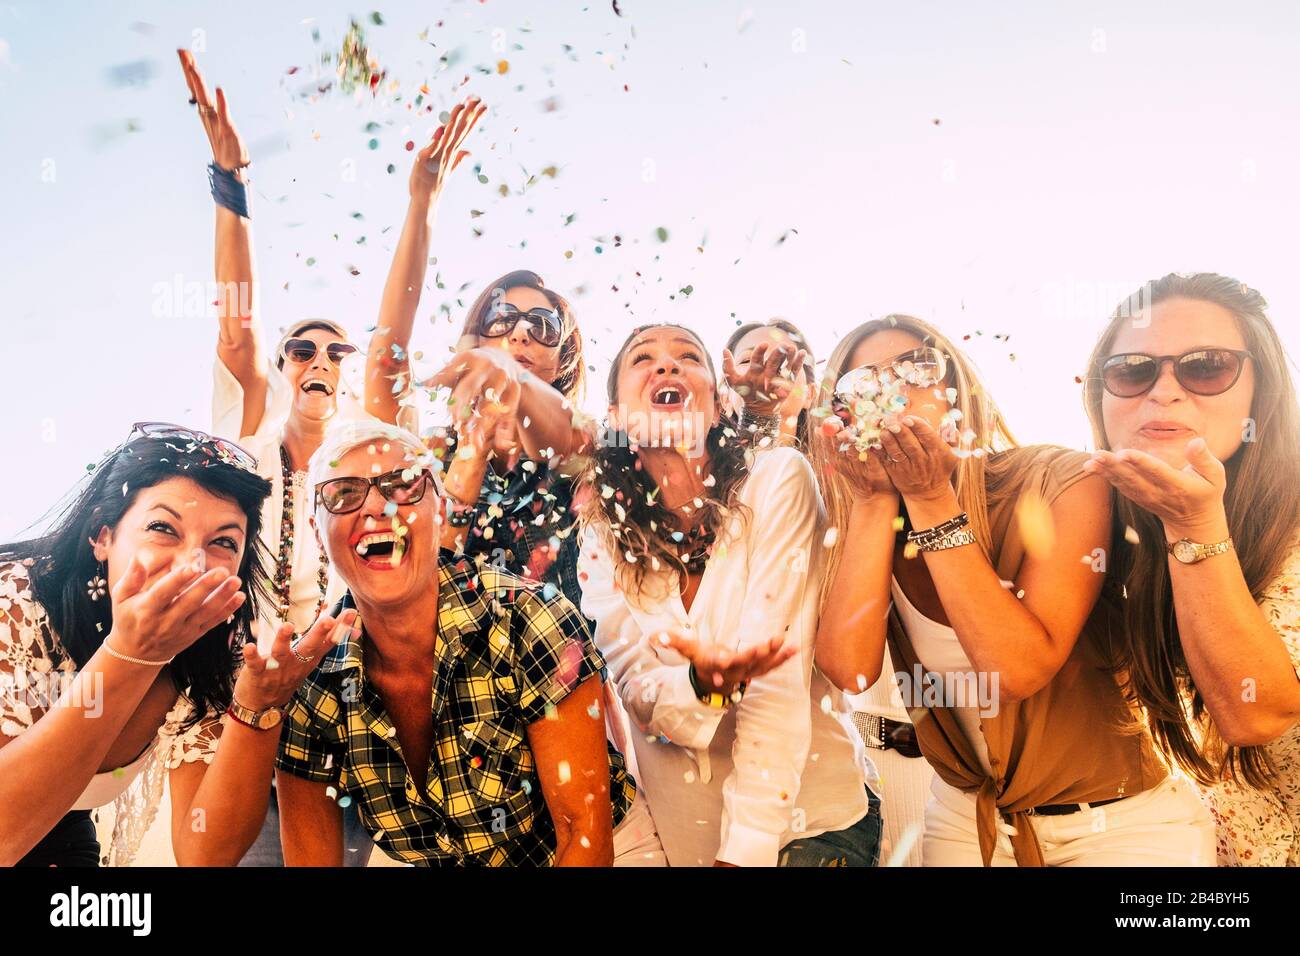 Menschen, die Spaß an Partyfeiern haben Freunde Konzept - Gruppe junger und erwachsener Frauen alle zusammen lachen blähende farbige Konfetti - Freundschaft und Lebensfreude mit gemischten aktiven Generationen Stockfoto